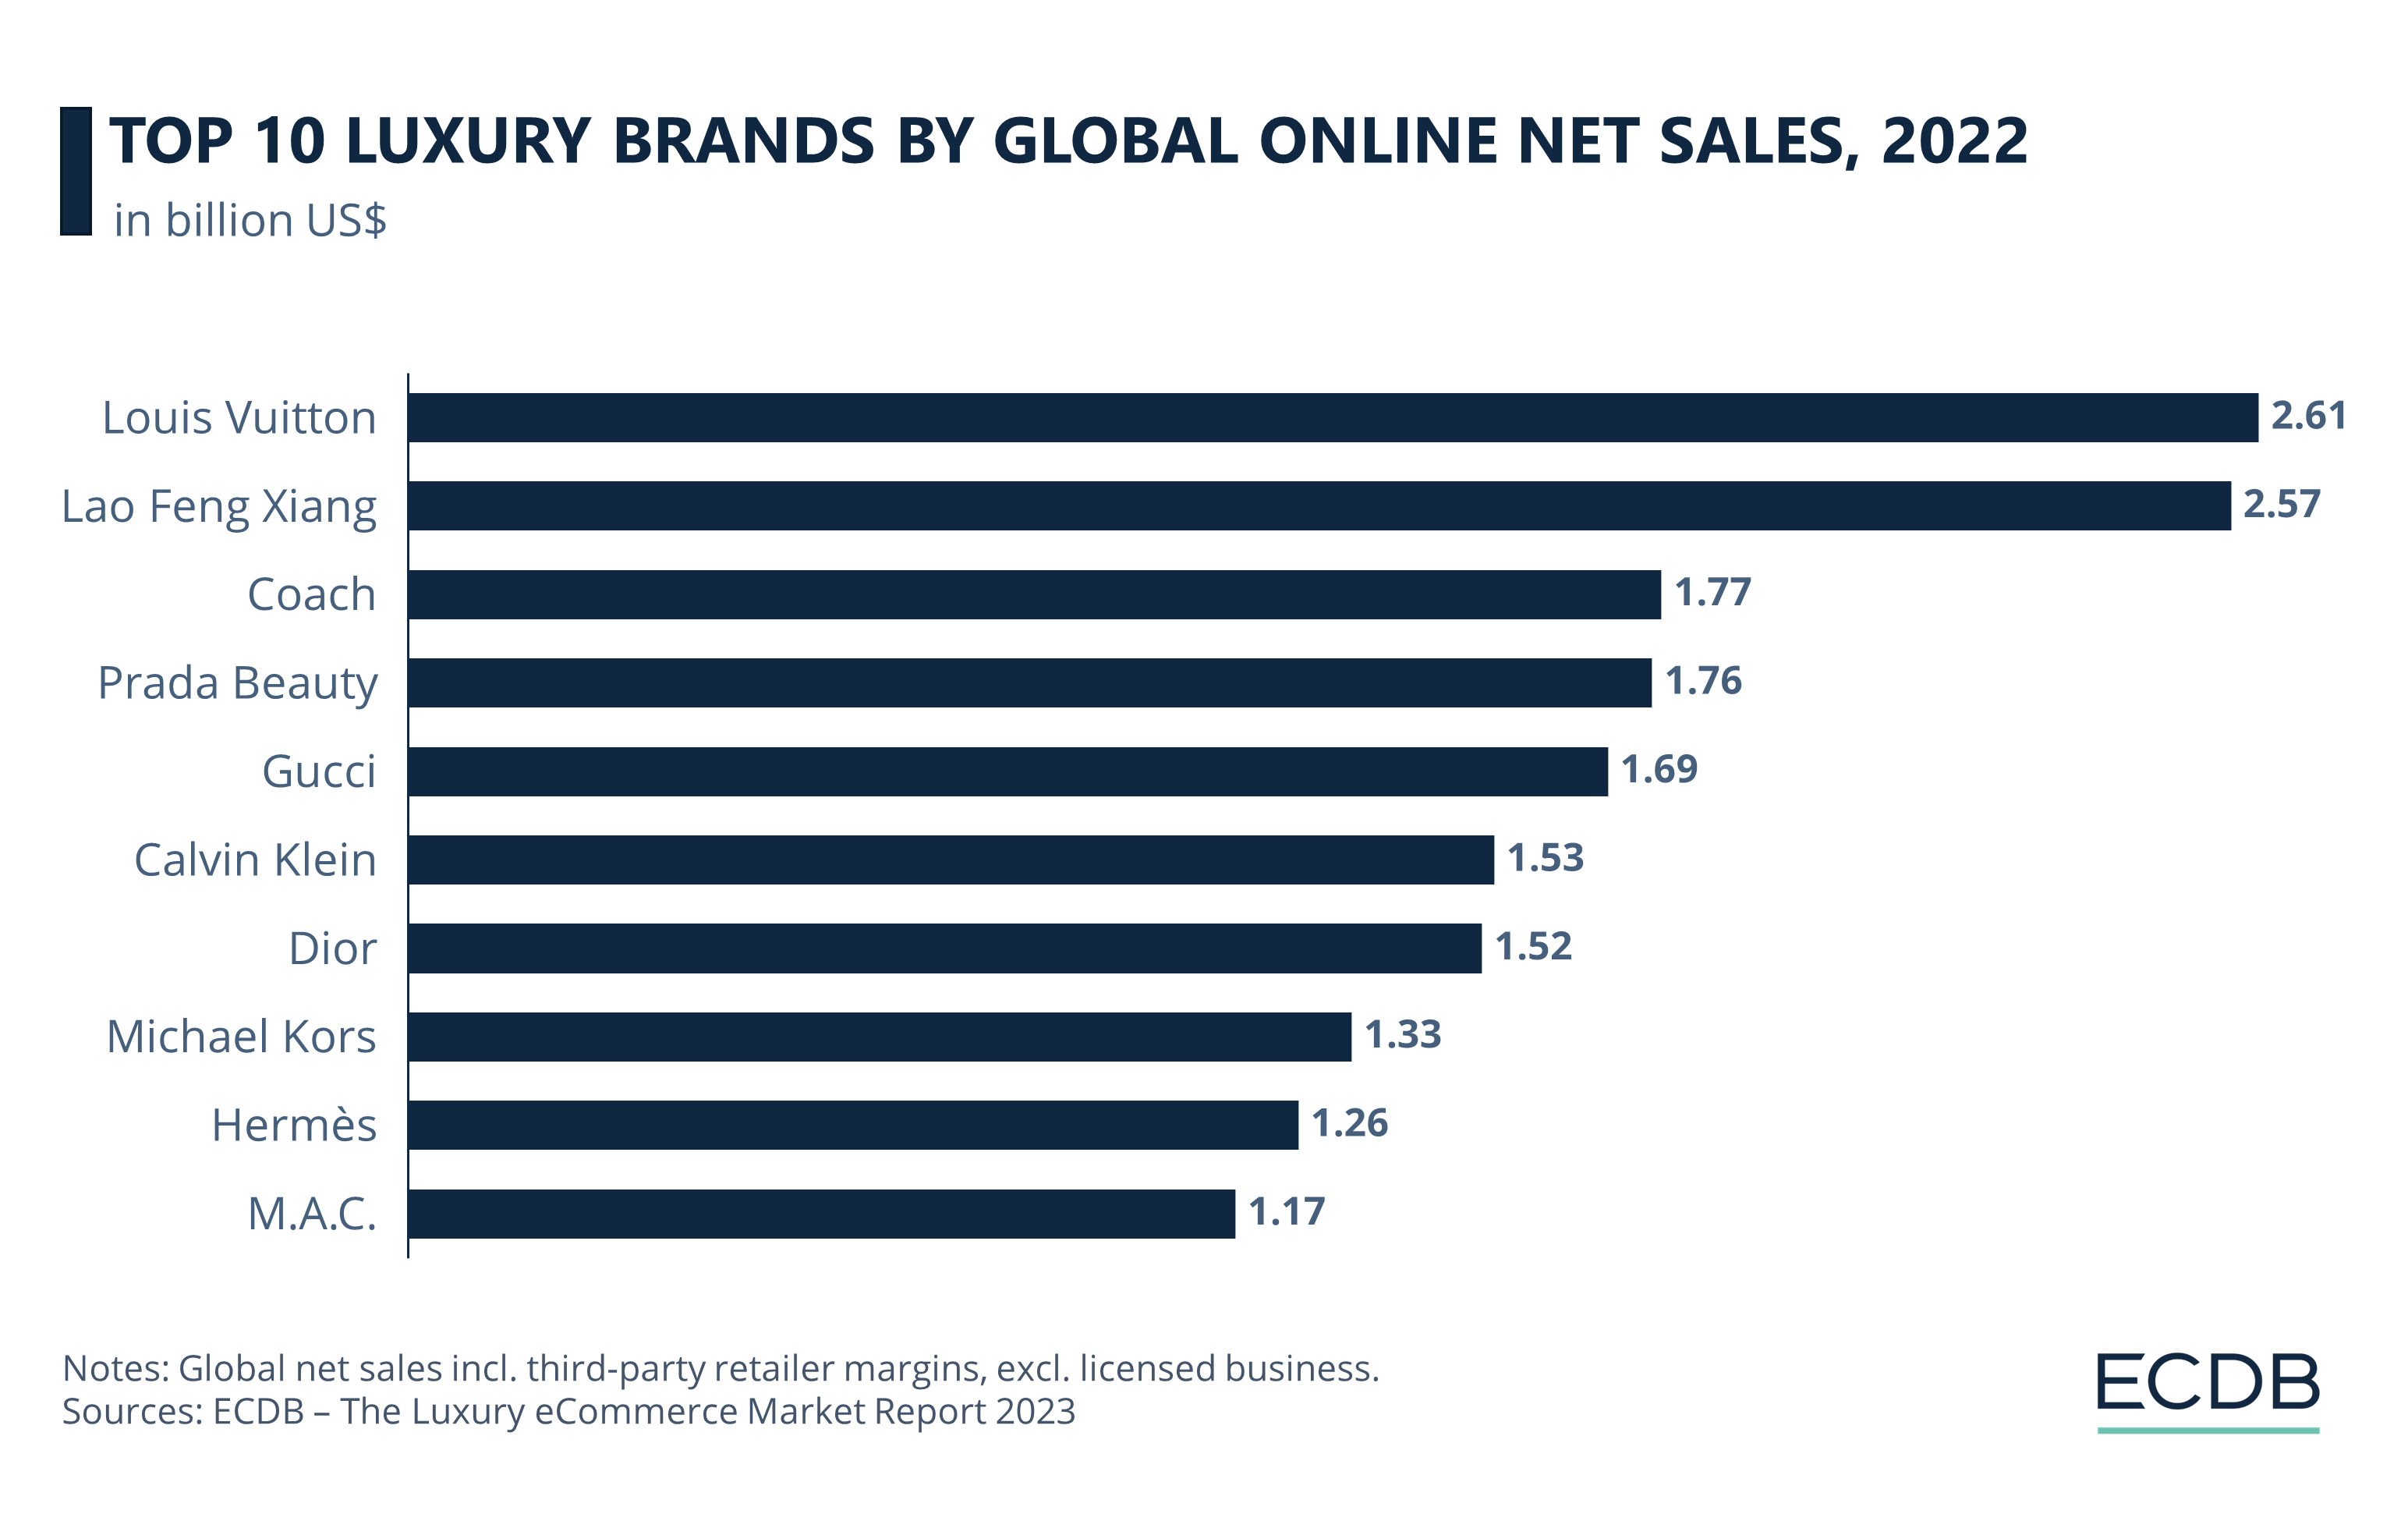 Top 10 Luxury Brands by Global Online Net Sales, 2022